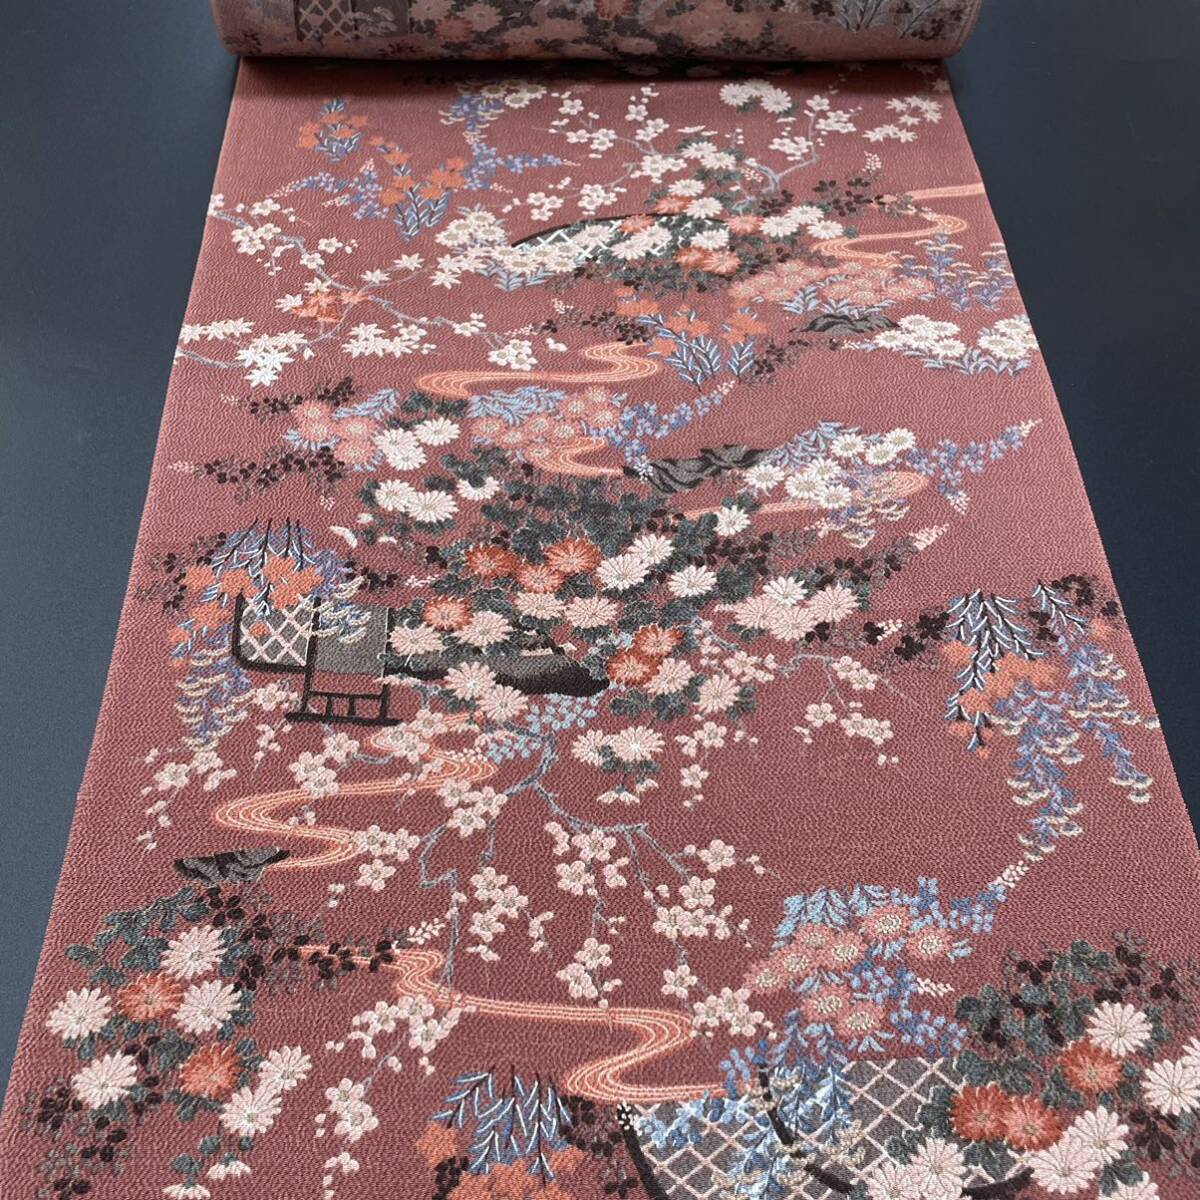 #. одежда магазин .# высококлассный крепдешин общий рисунок мелкий рисунок .. обработка натуральный шелк ткань надеты сяку справка розничная цена 138,000 иен японский костюм японская одежда кимоно #KUR227.